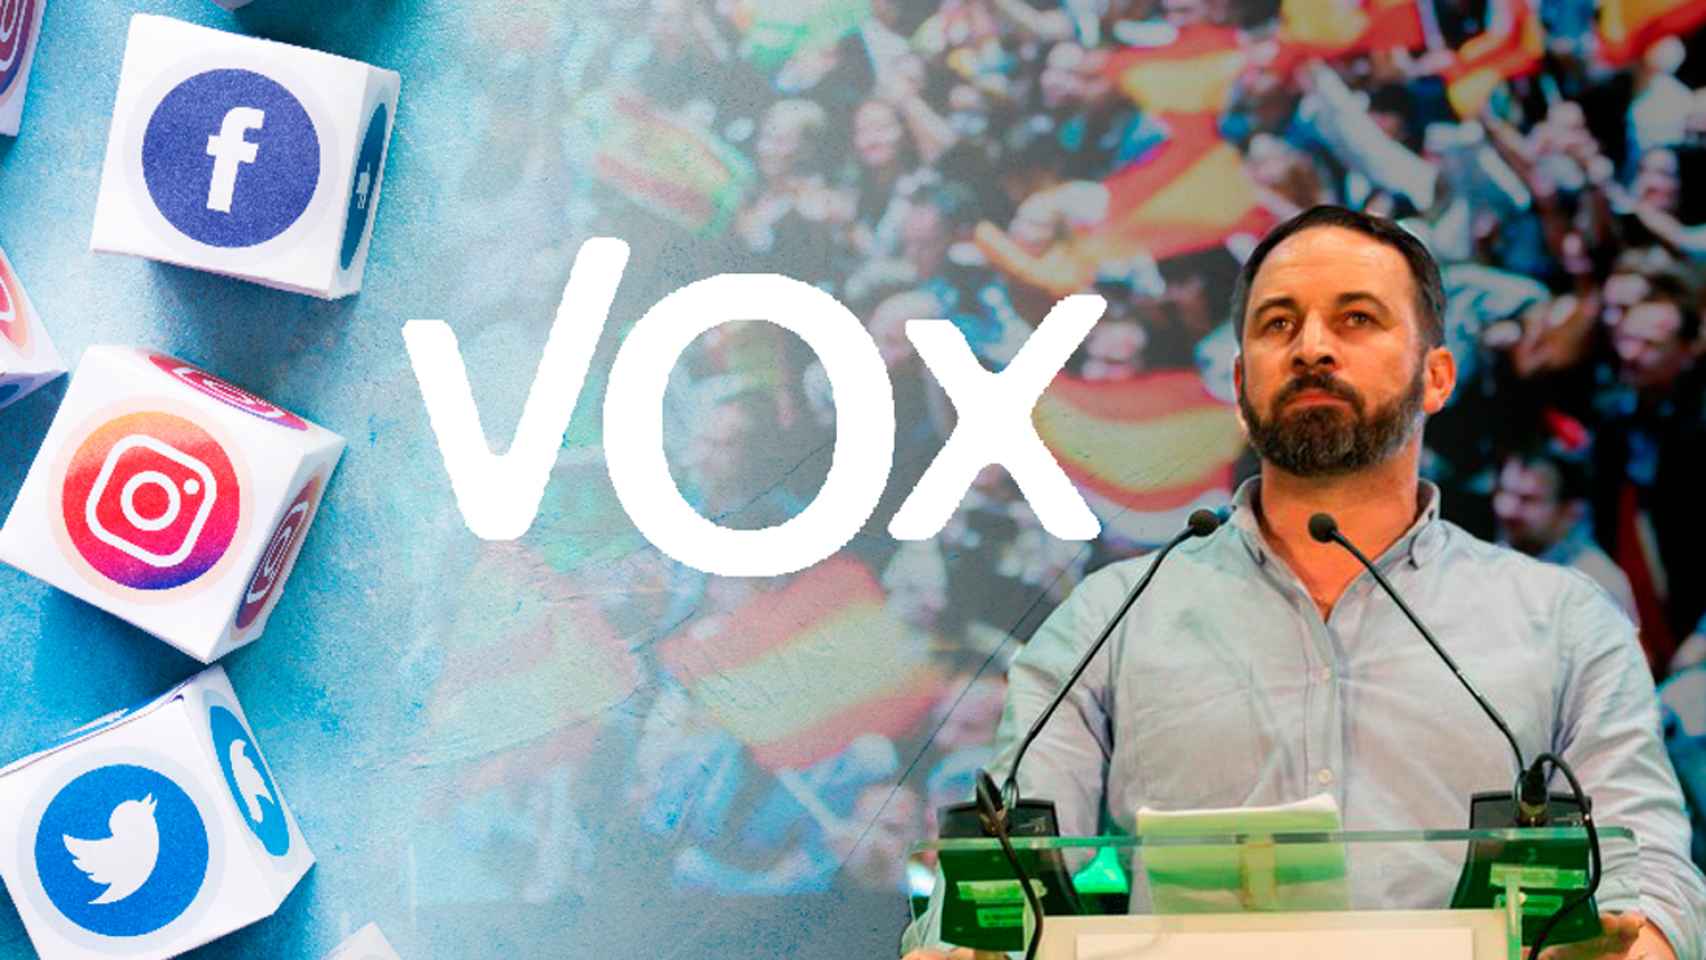 Vox 'gana' las elecciones en las redes sociales